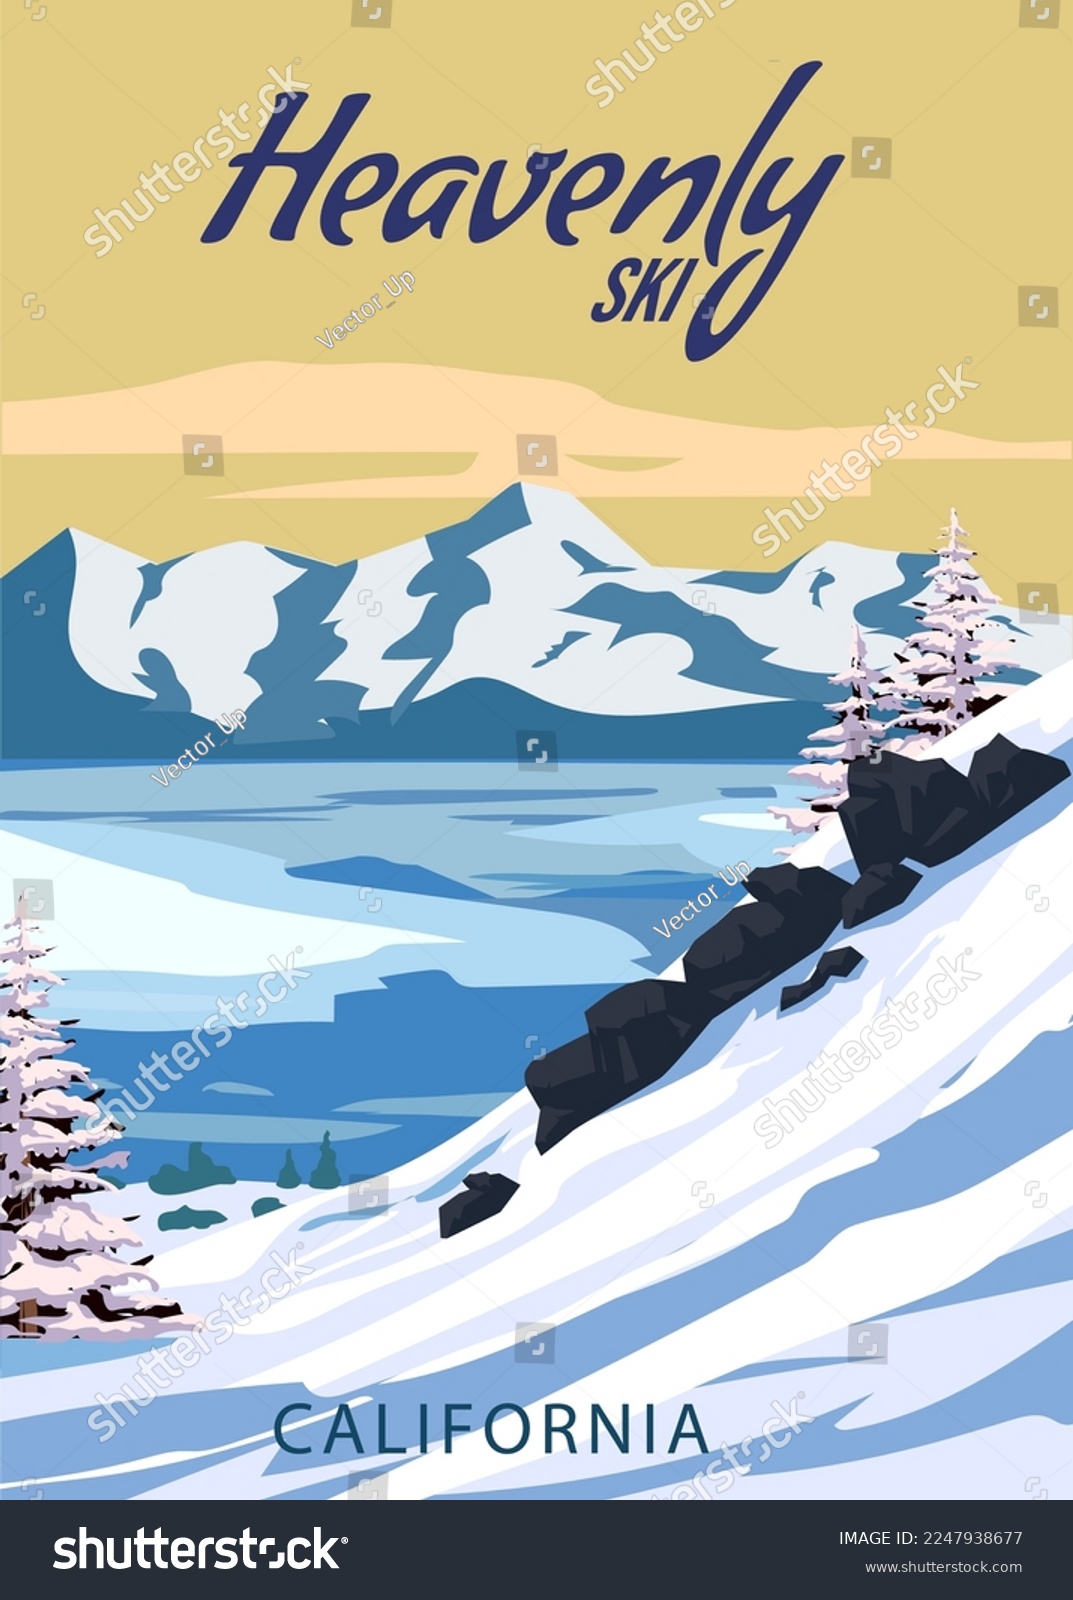 SVG of Heavenly Ski Travel resort poster vintage. California USA winter landscape travel card svg